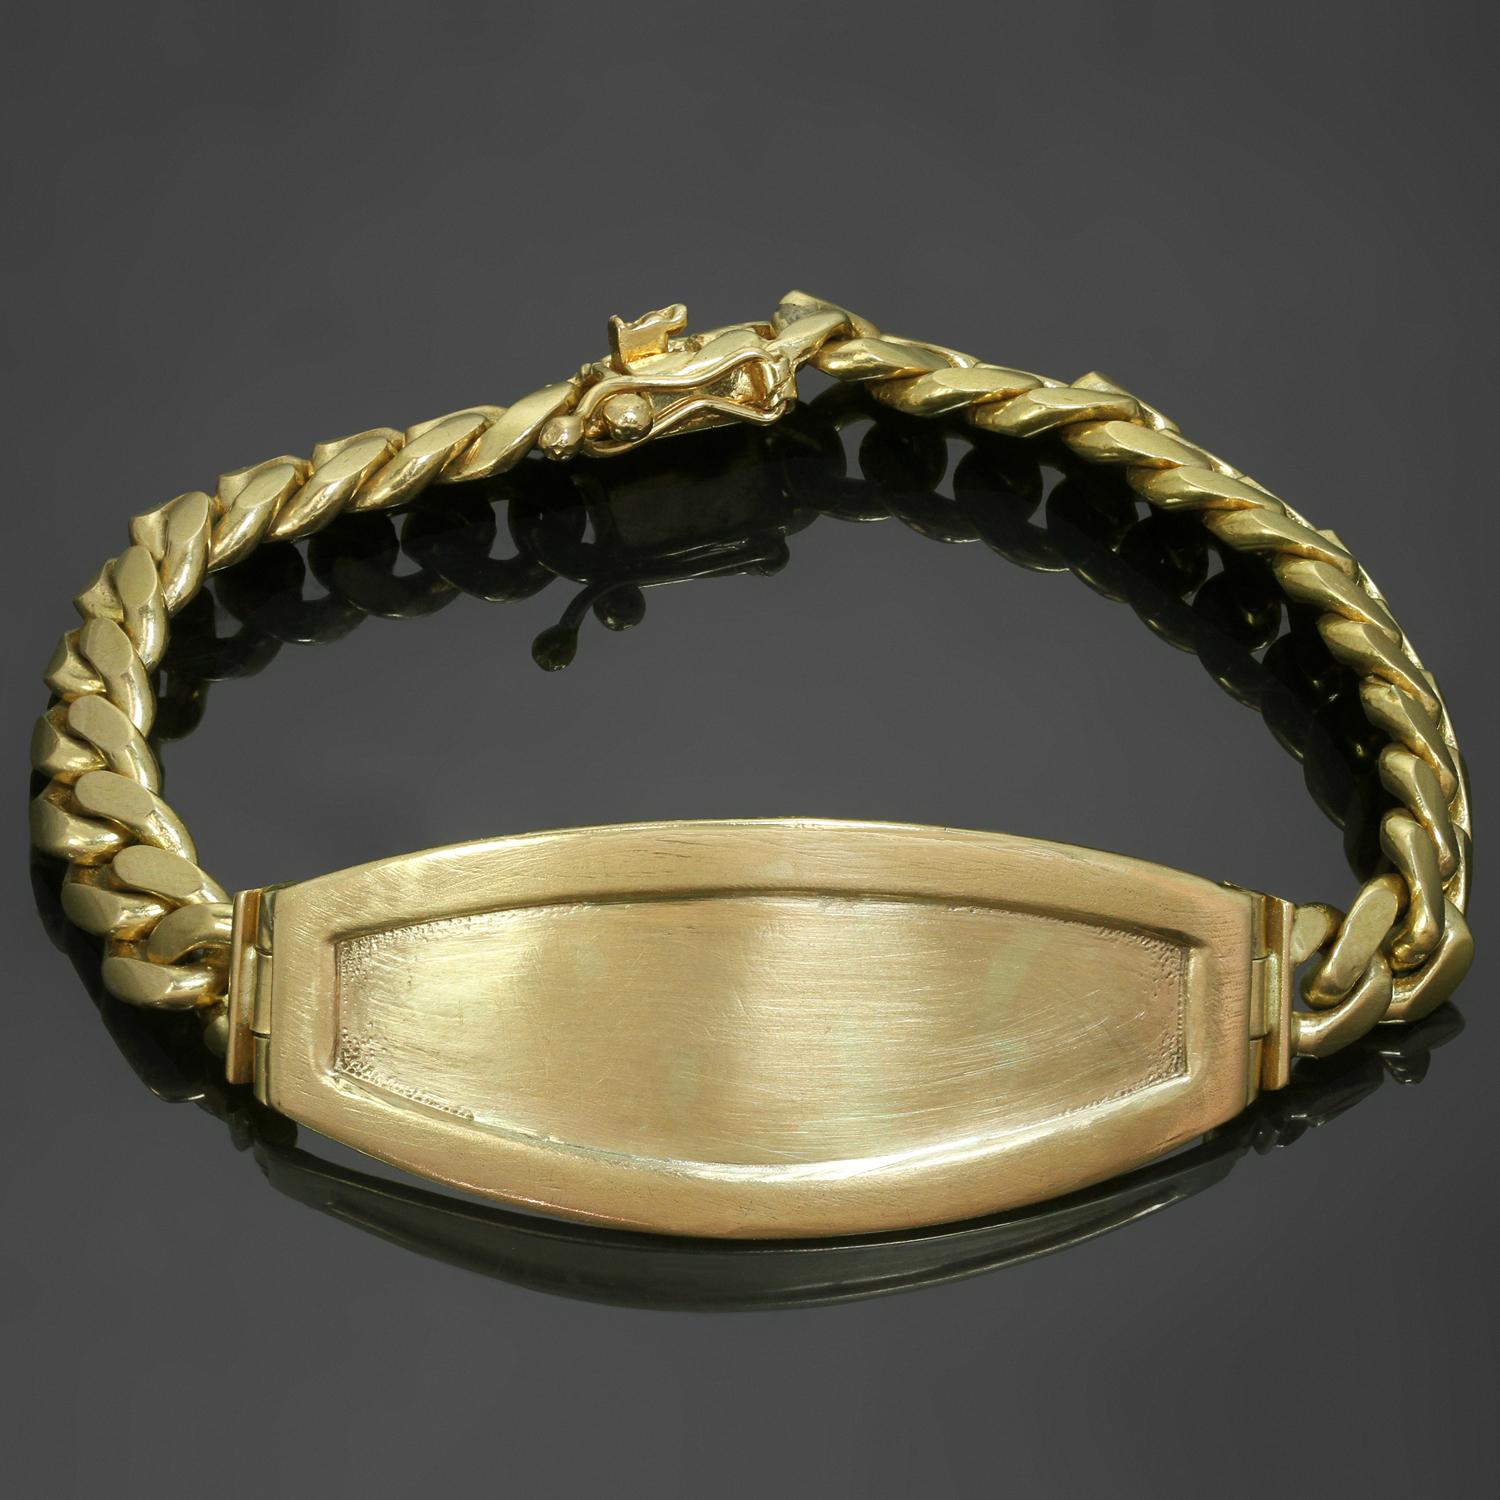 Ce bracelet d'identité unisexe classique et vintage est fabriqué en or jaune 18 carats. Fabriqué aux États-Unis dans les années 1980. Mesures : 7.19,5 cm de long, 20 mm de large, 7 mm de large pour la chaîne. D'occasion. Présente quelques signes